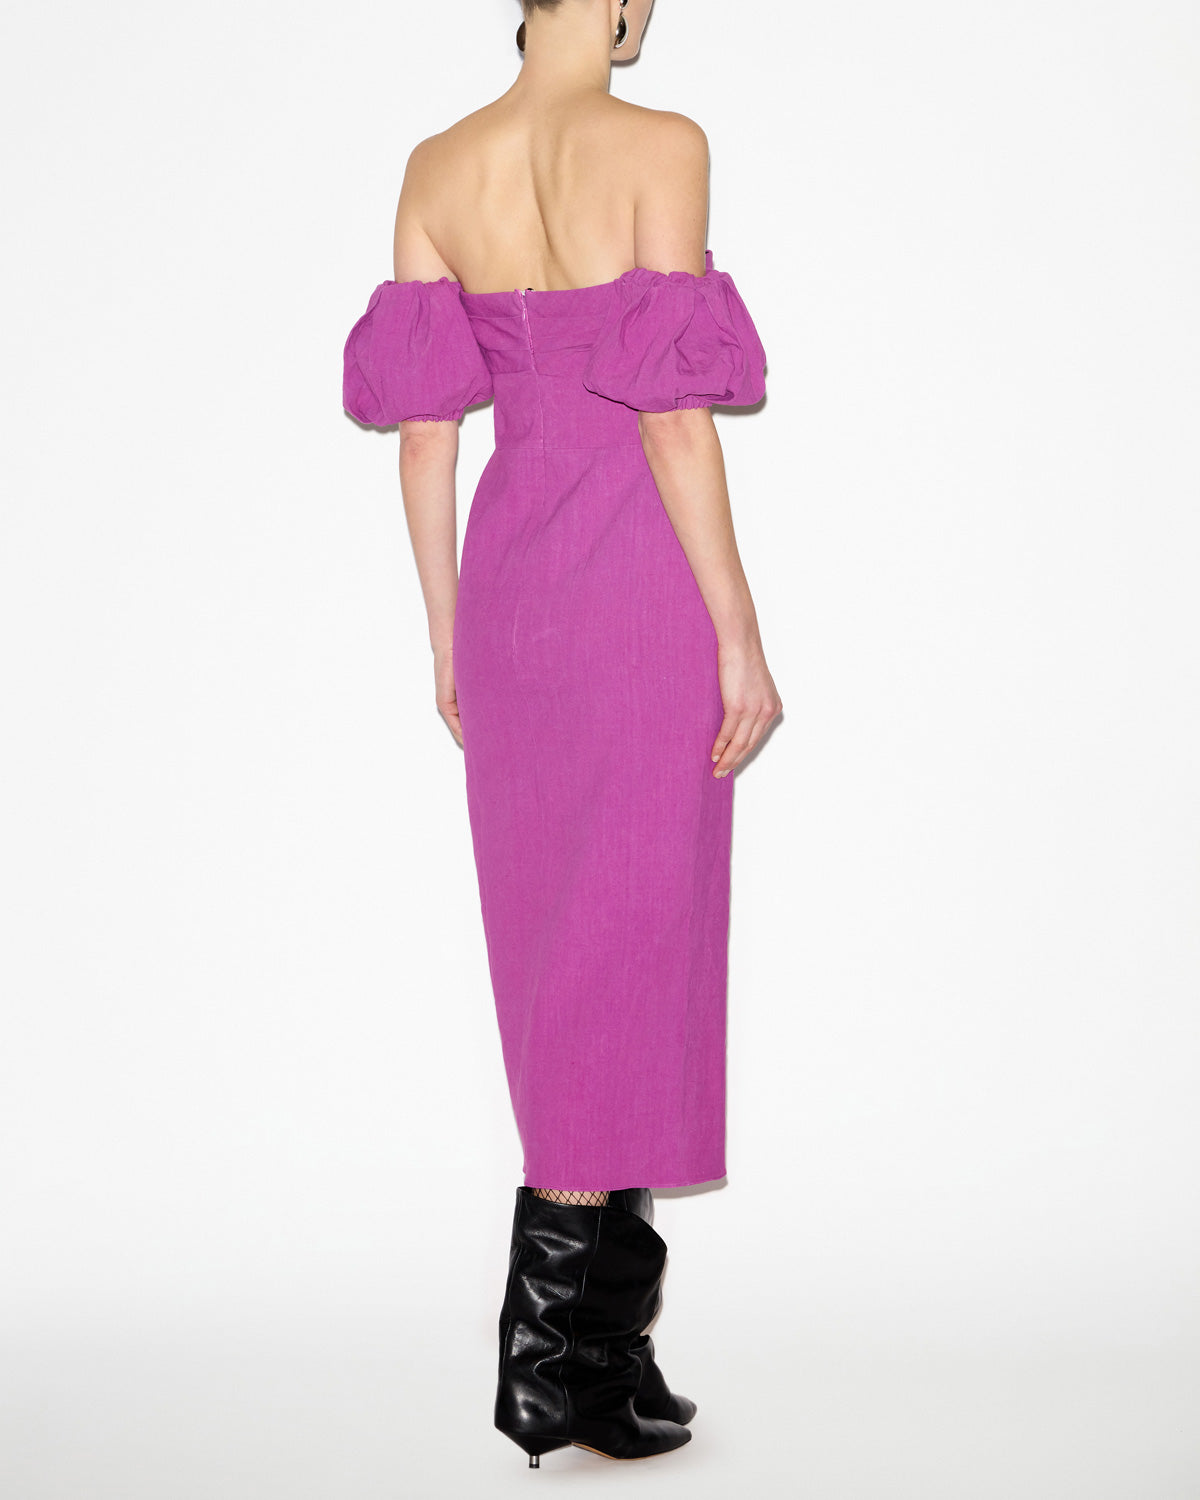 Darlena dress Woman Purple 3